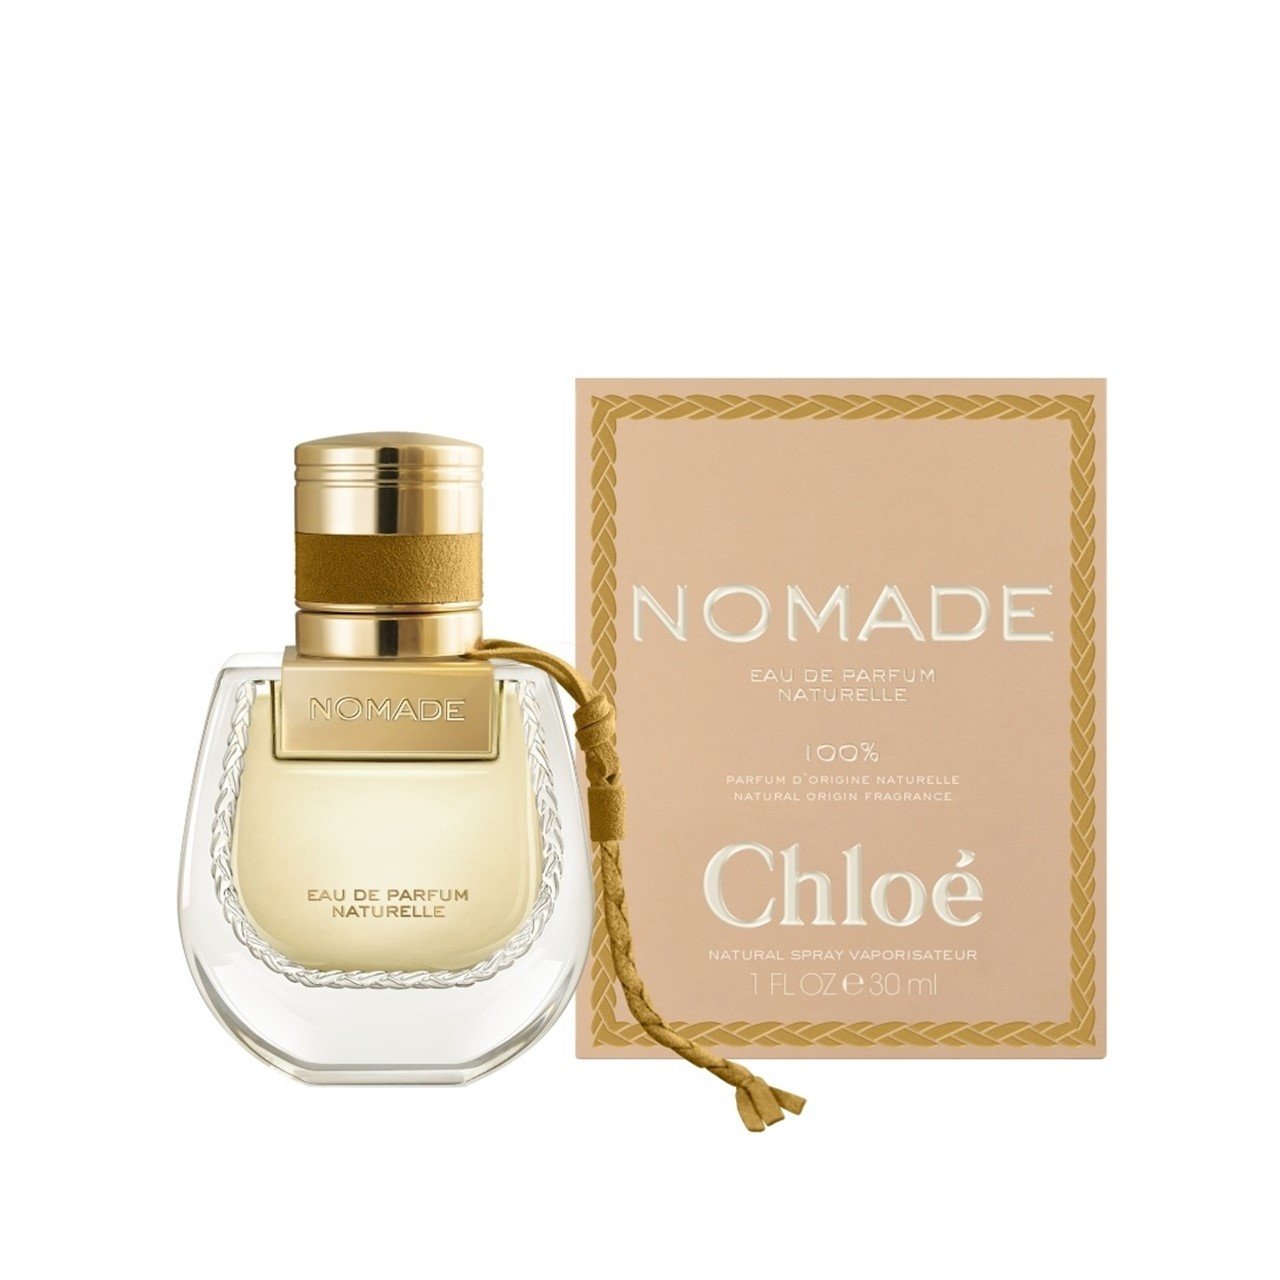 Chloé Nomade Eau de Parfum Naturelle 30ml